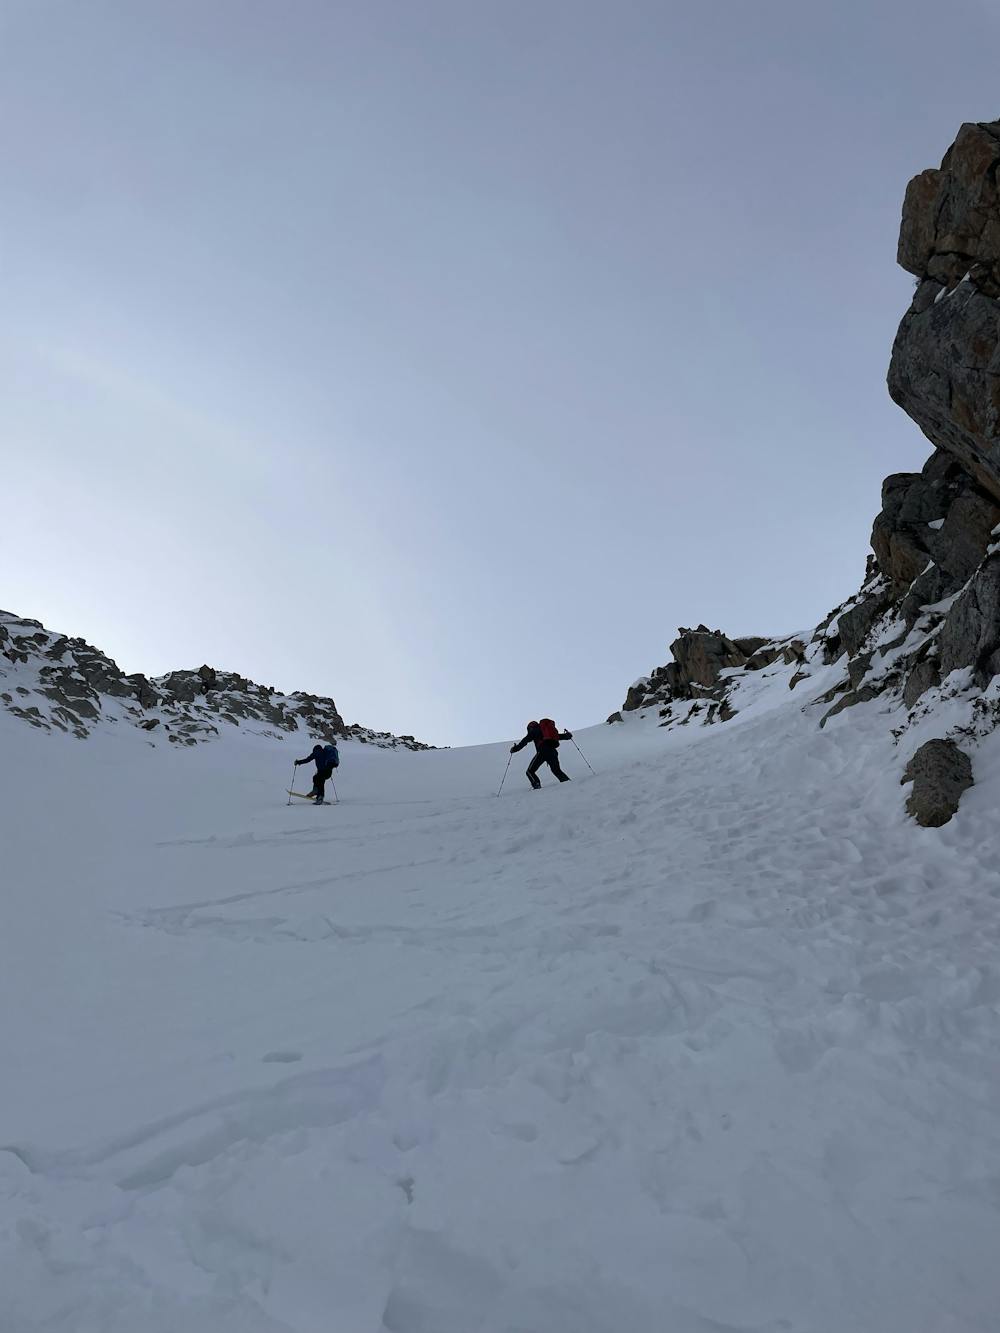 Photo from 4100m ski touring in winter near Kumtor mine